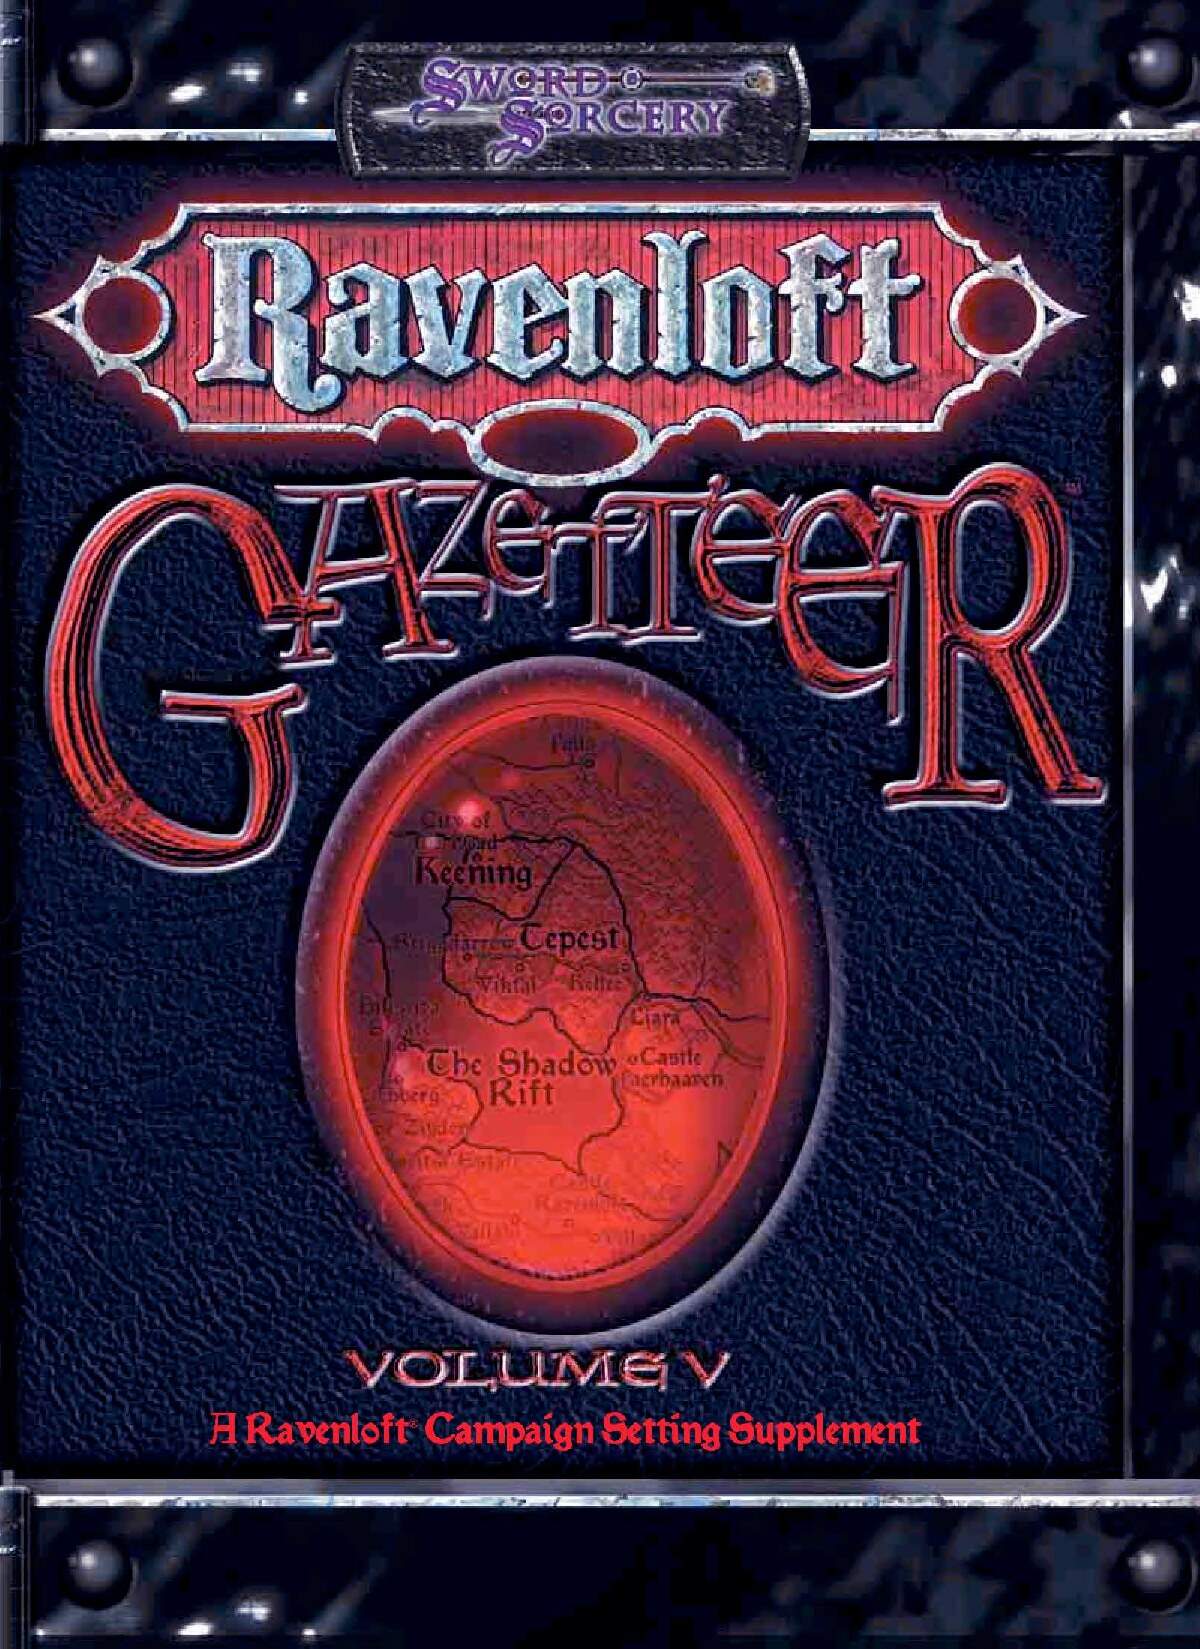 Gazetteer Volume V